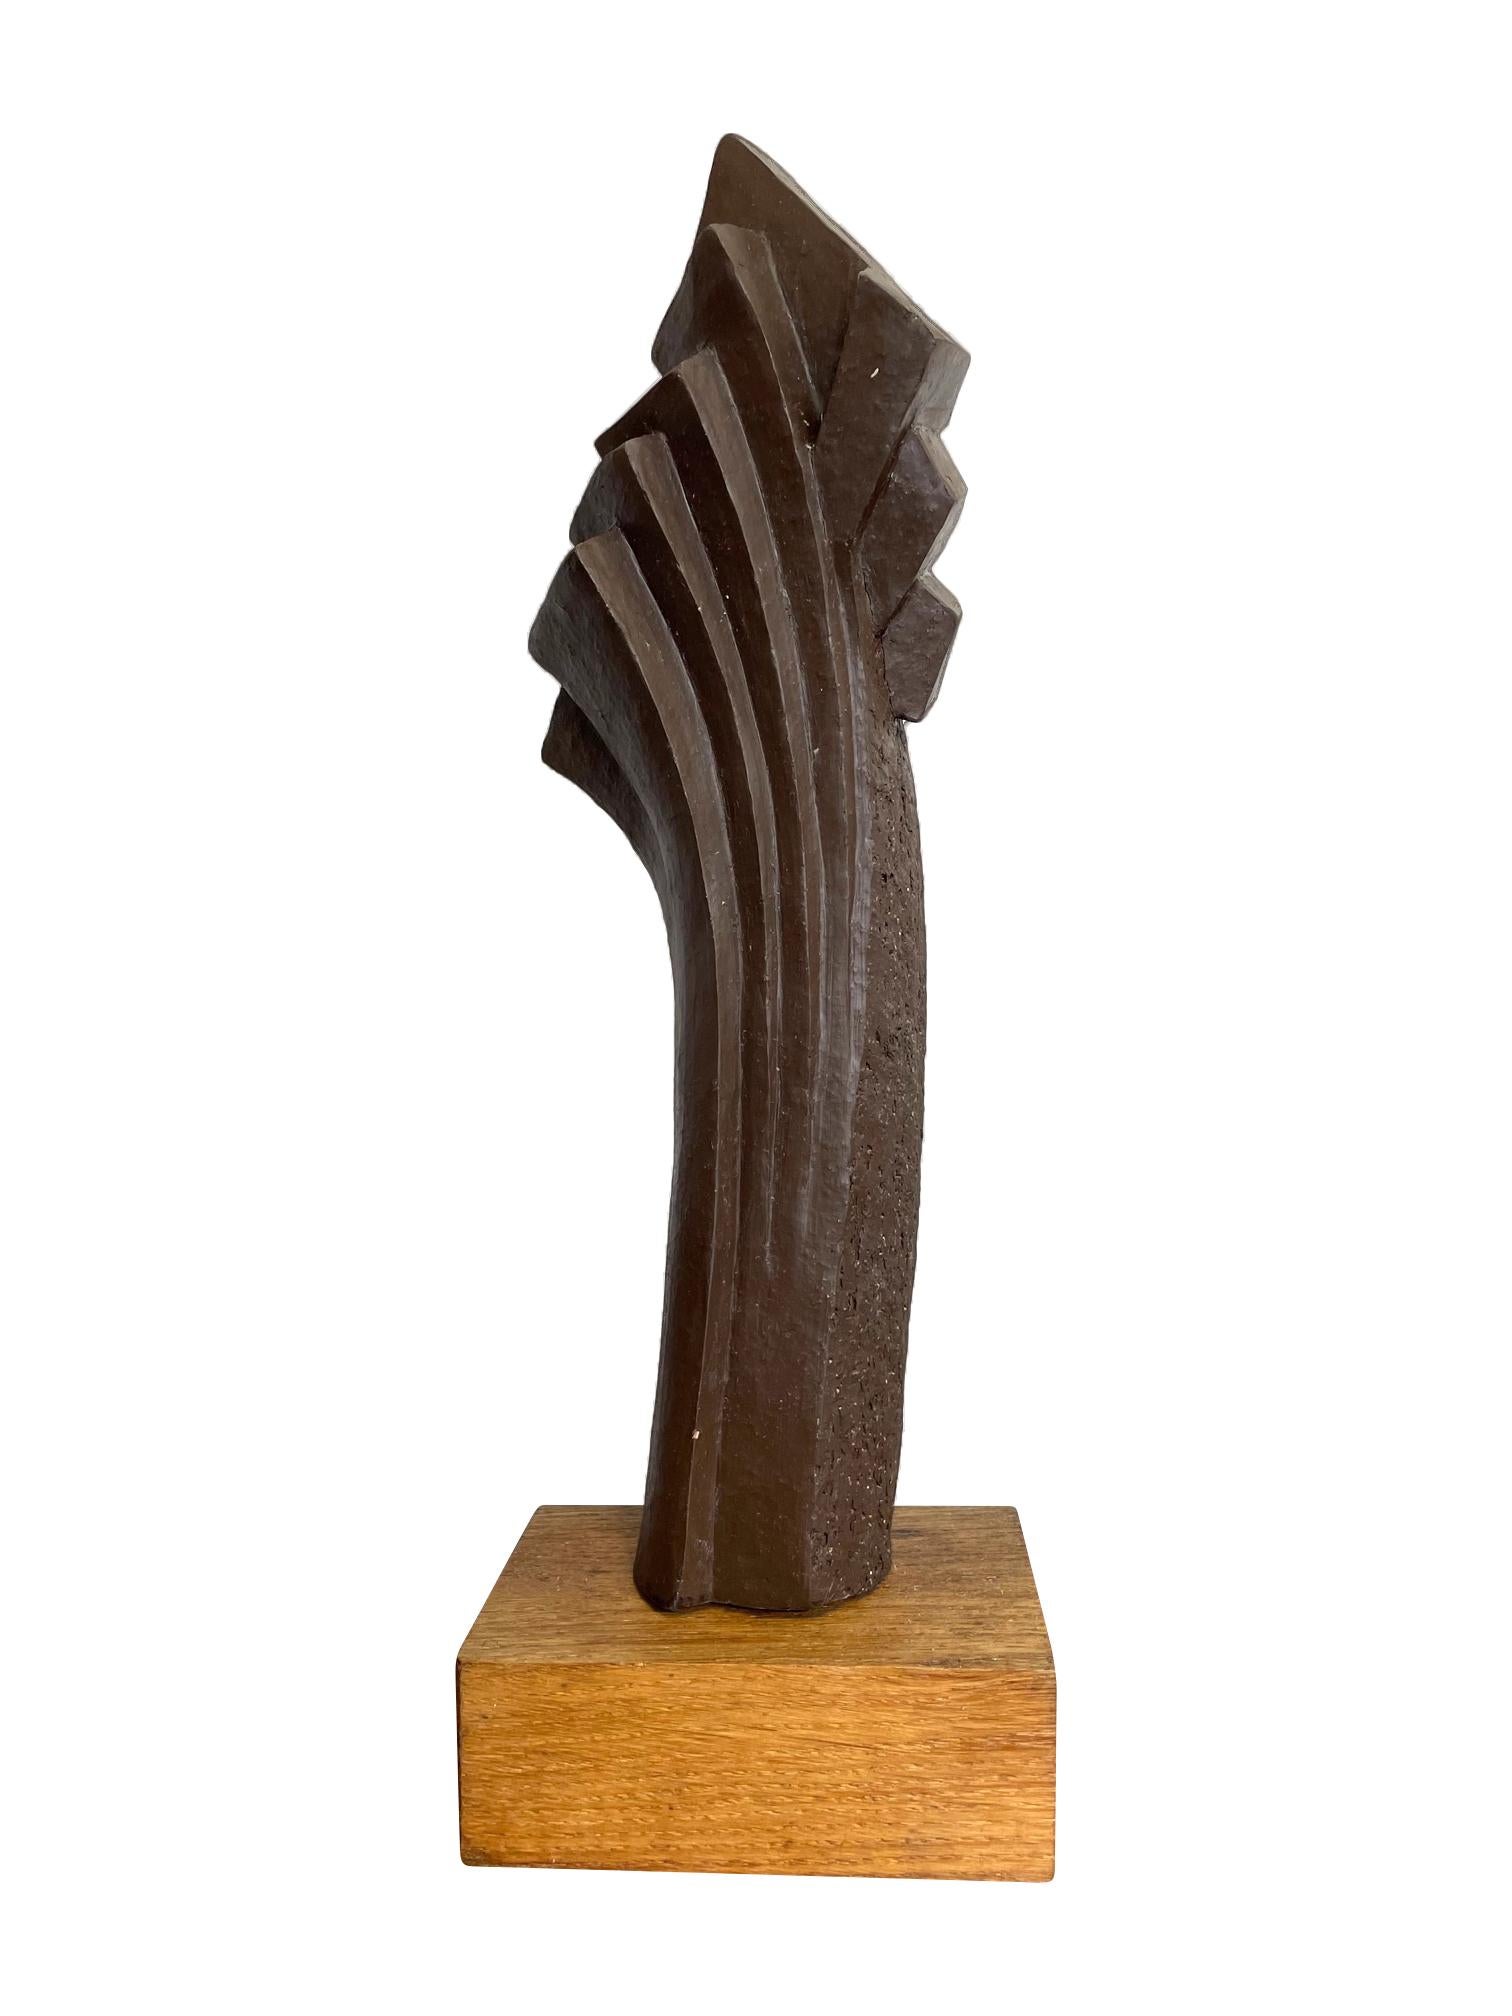 Sculpture abstraite belge des années 1960 en céramique avec finition de style texturé en bronze montée sur une base en bois naturel, signée sur la base 